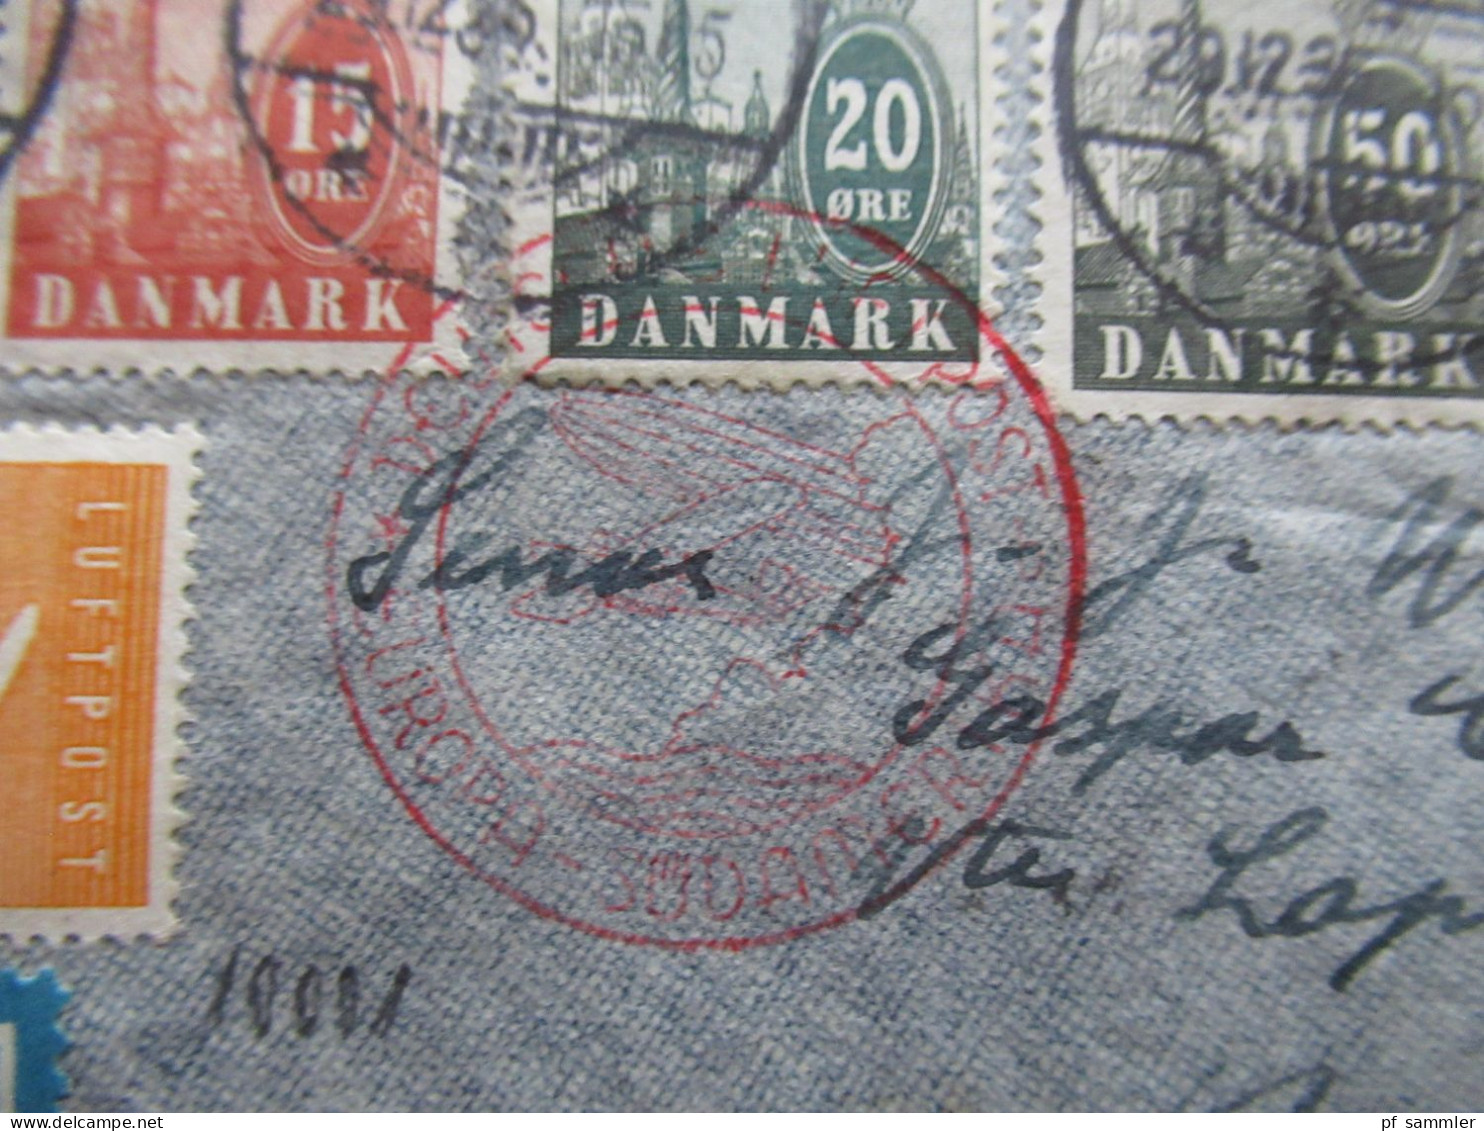 Dänemark 29.12.1936 Zeppelin Südamerikafahrt Odense - Buenos Aires Bahnpost Berlin - Warnemünde Flugpostmarken 1934 - Briefe U. Dokumente